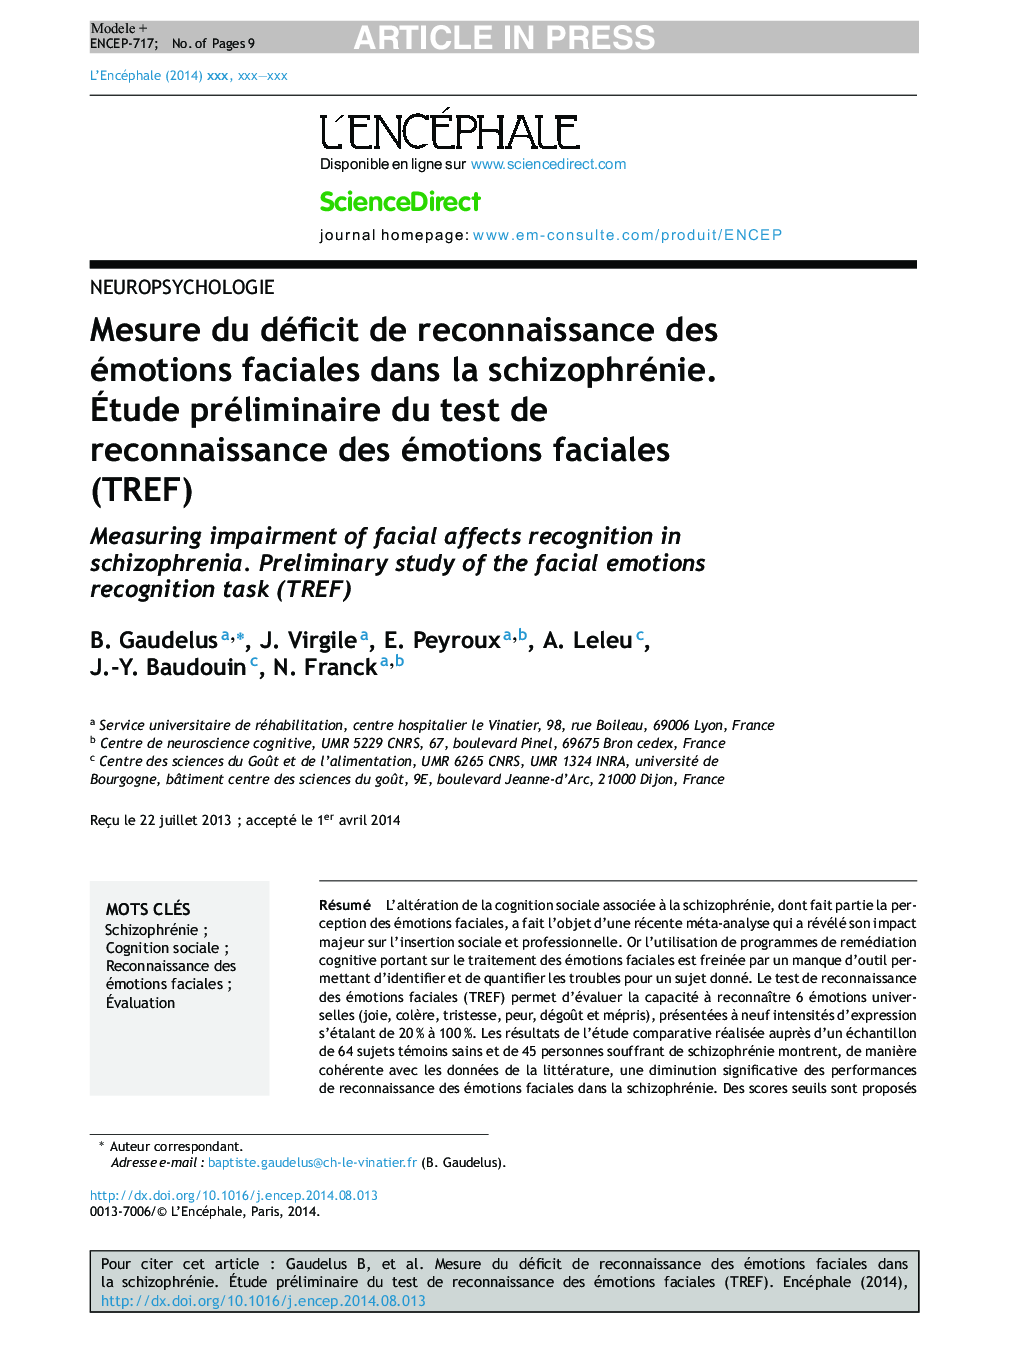 Mesure du déficit de reconnaissance des émotions faciales dans la schizophrénie. Ãtude préliminaire du test de reconnaissance des émotions faciales (TREF)